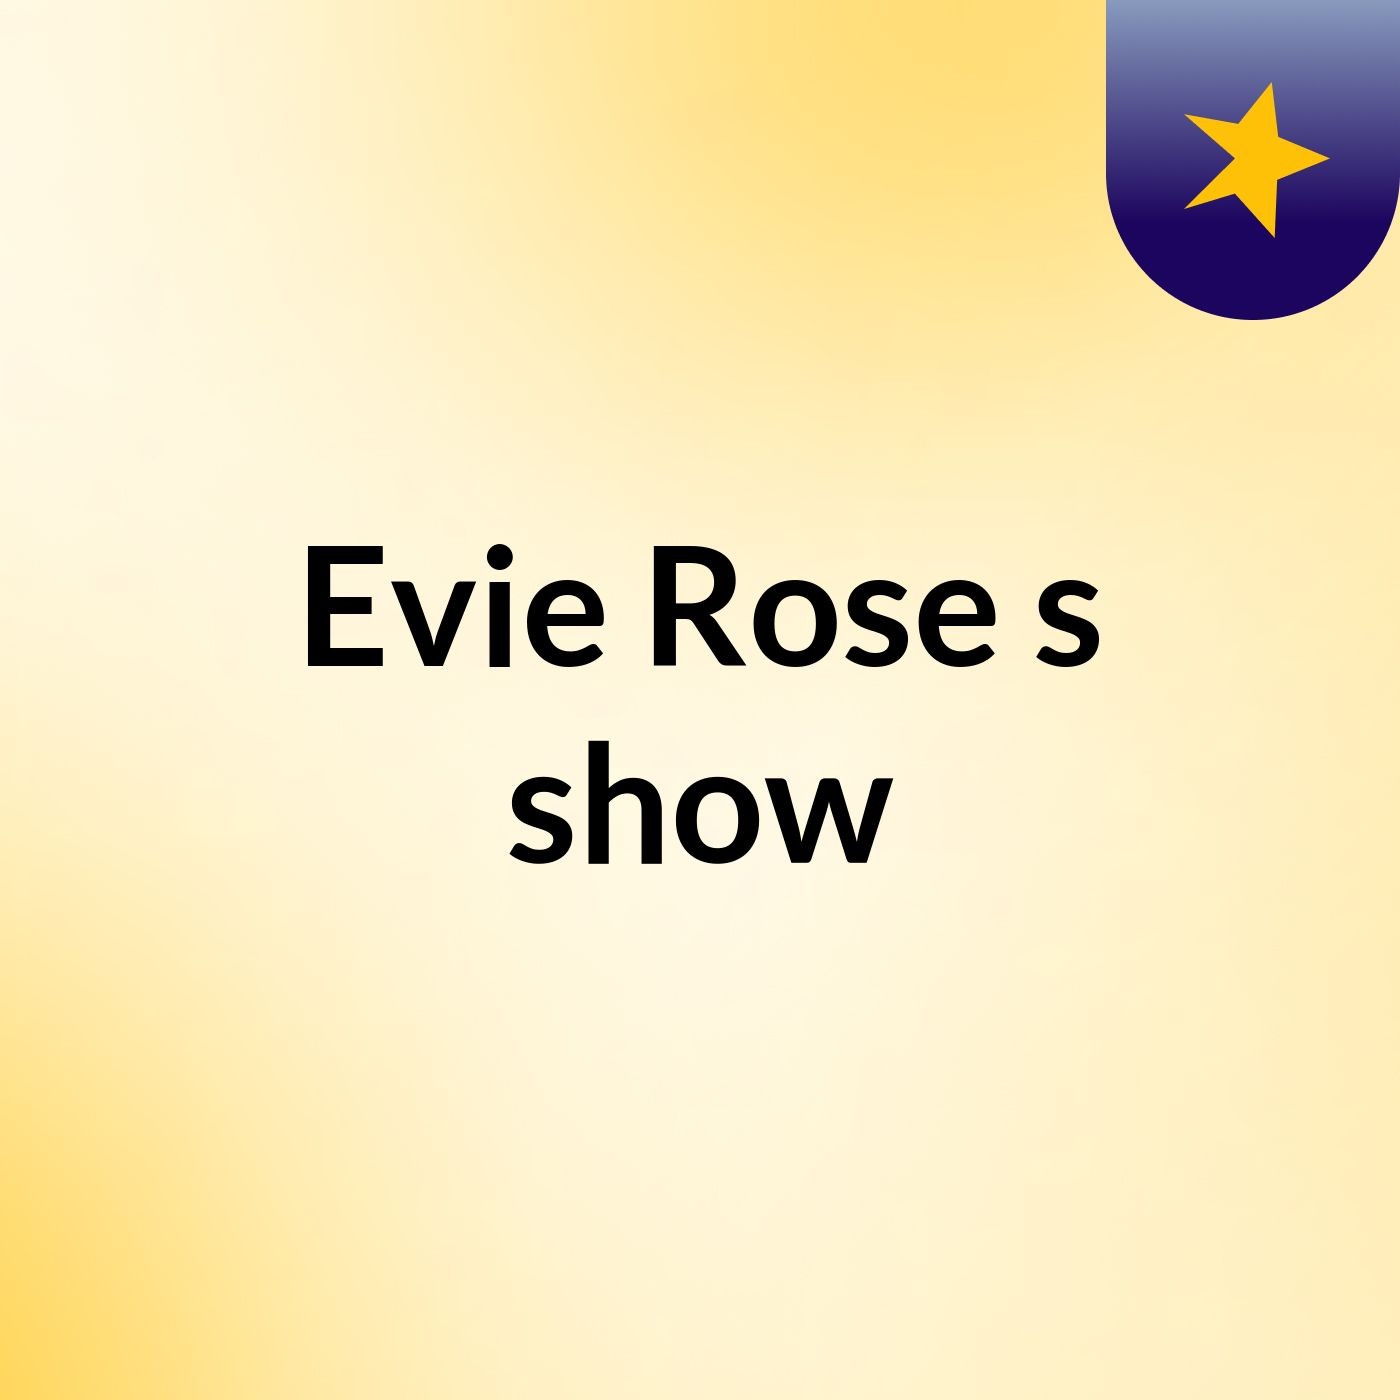 Evie Rose's show